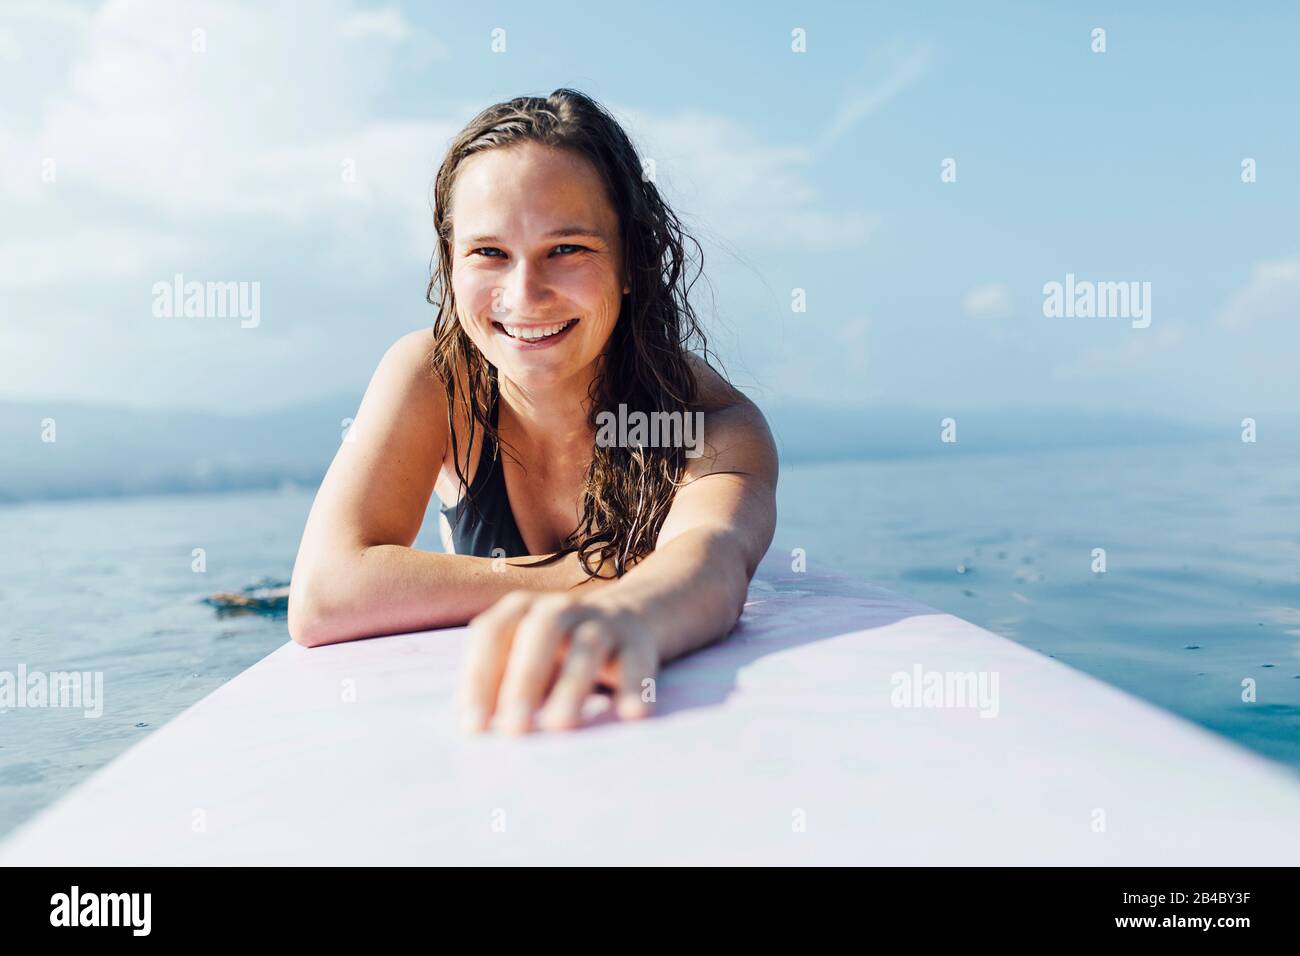 Junge Frau 20-30 Jahre liegt auf Surfbrett und genießt die Sonne, Kroatien Stock Photo